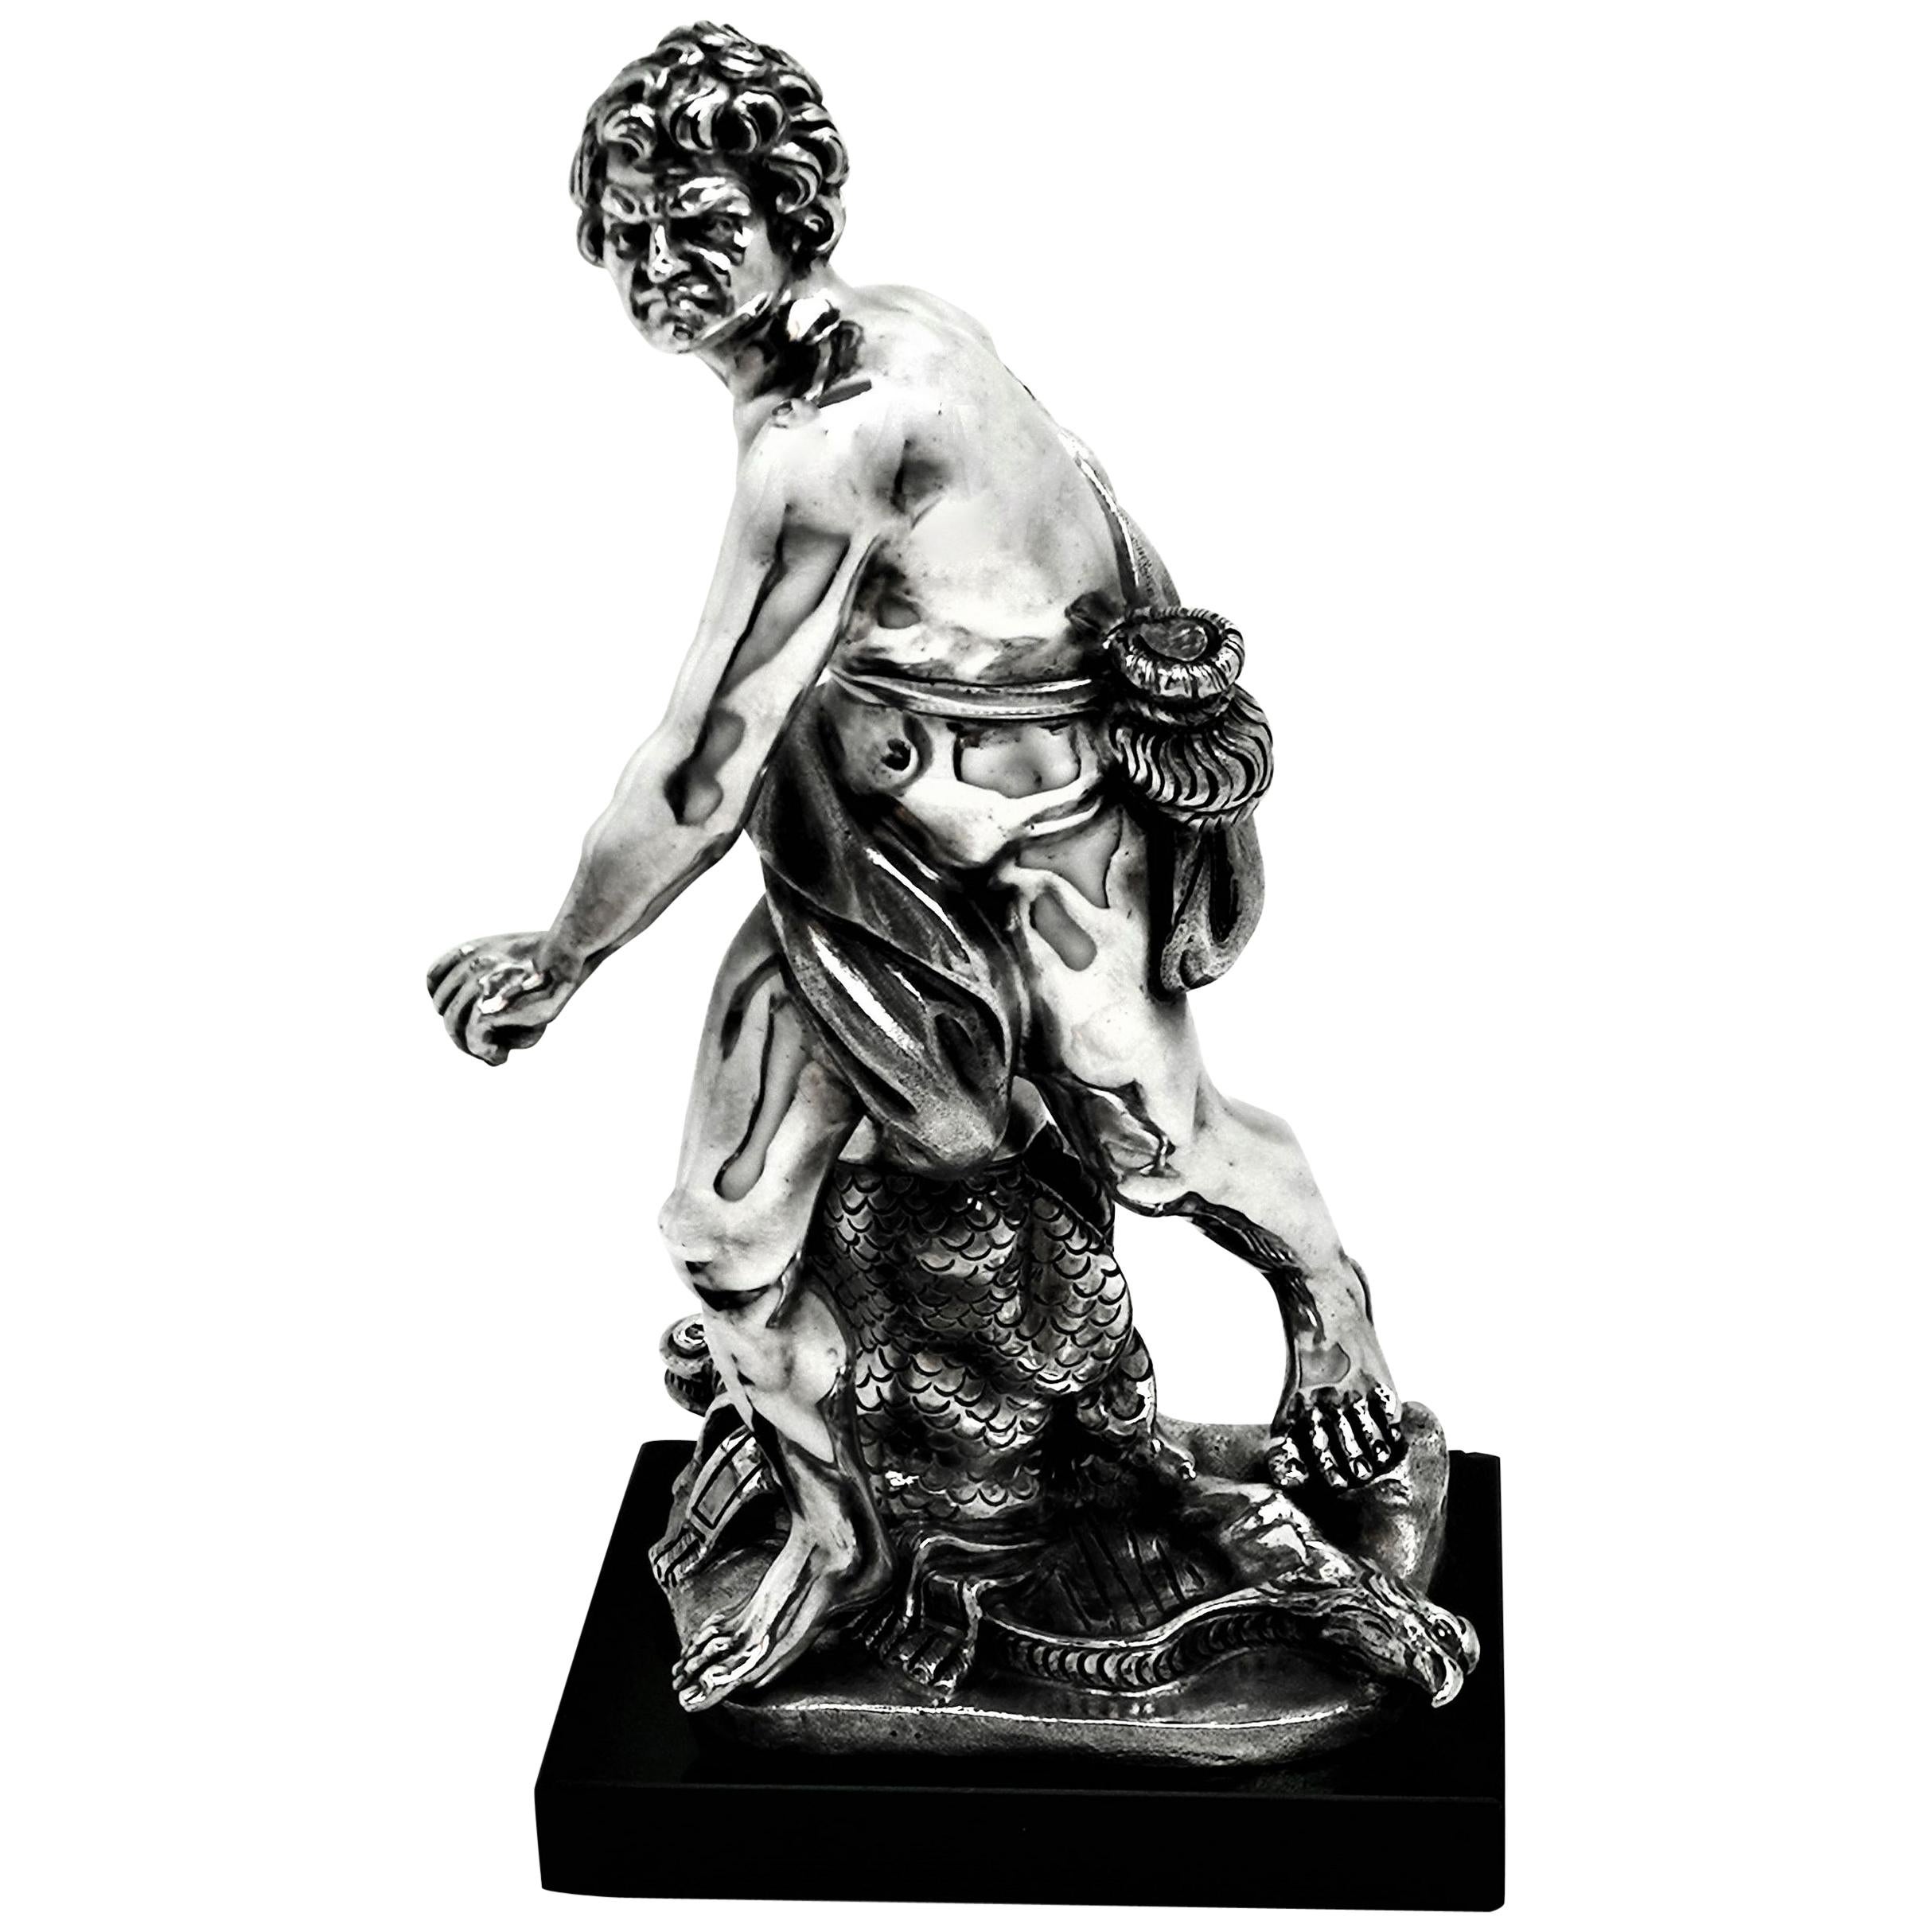 Italian Solid Silver Sculpture David & Goliath Classical Male Figure Model